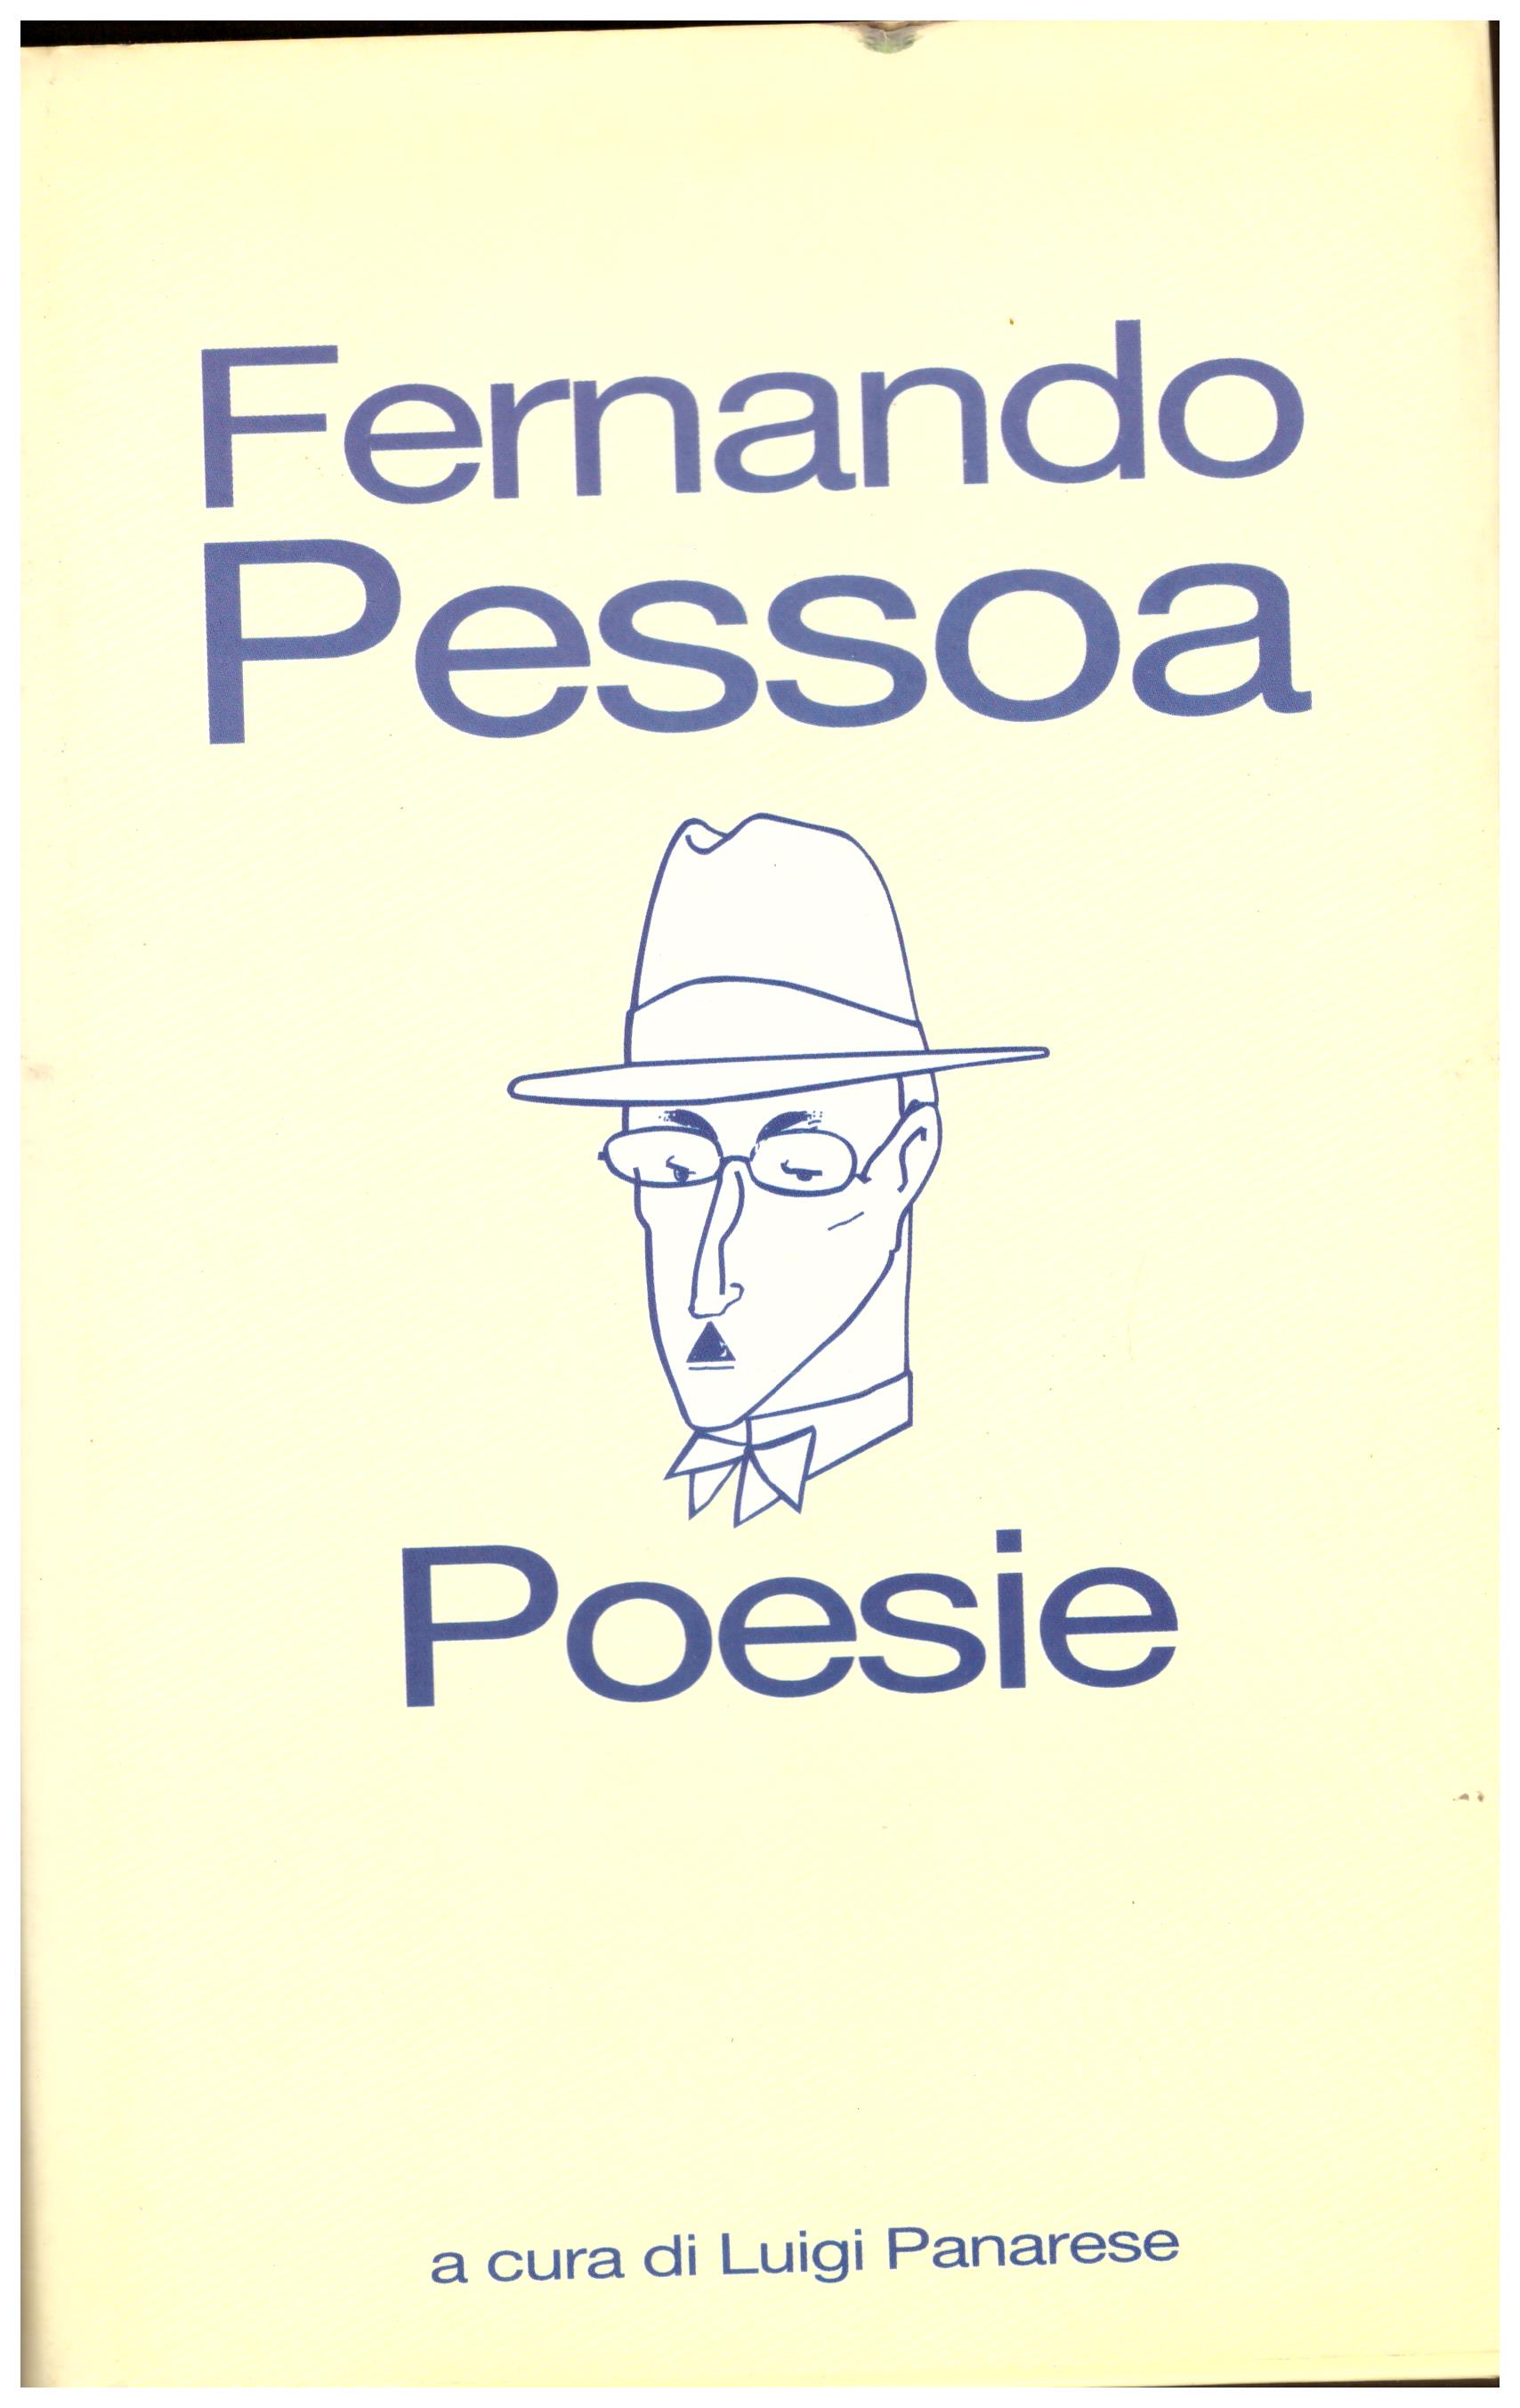 Titolo: Poesie Autore: Fernando Pessoa Editore: cde 1996